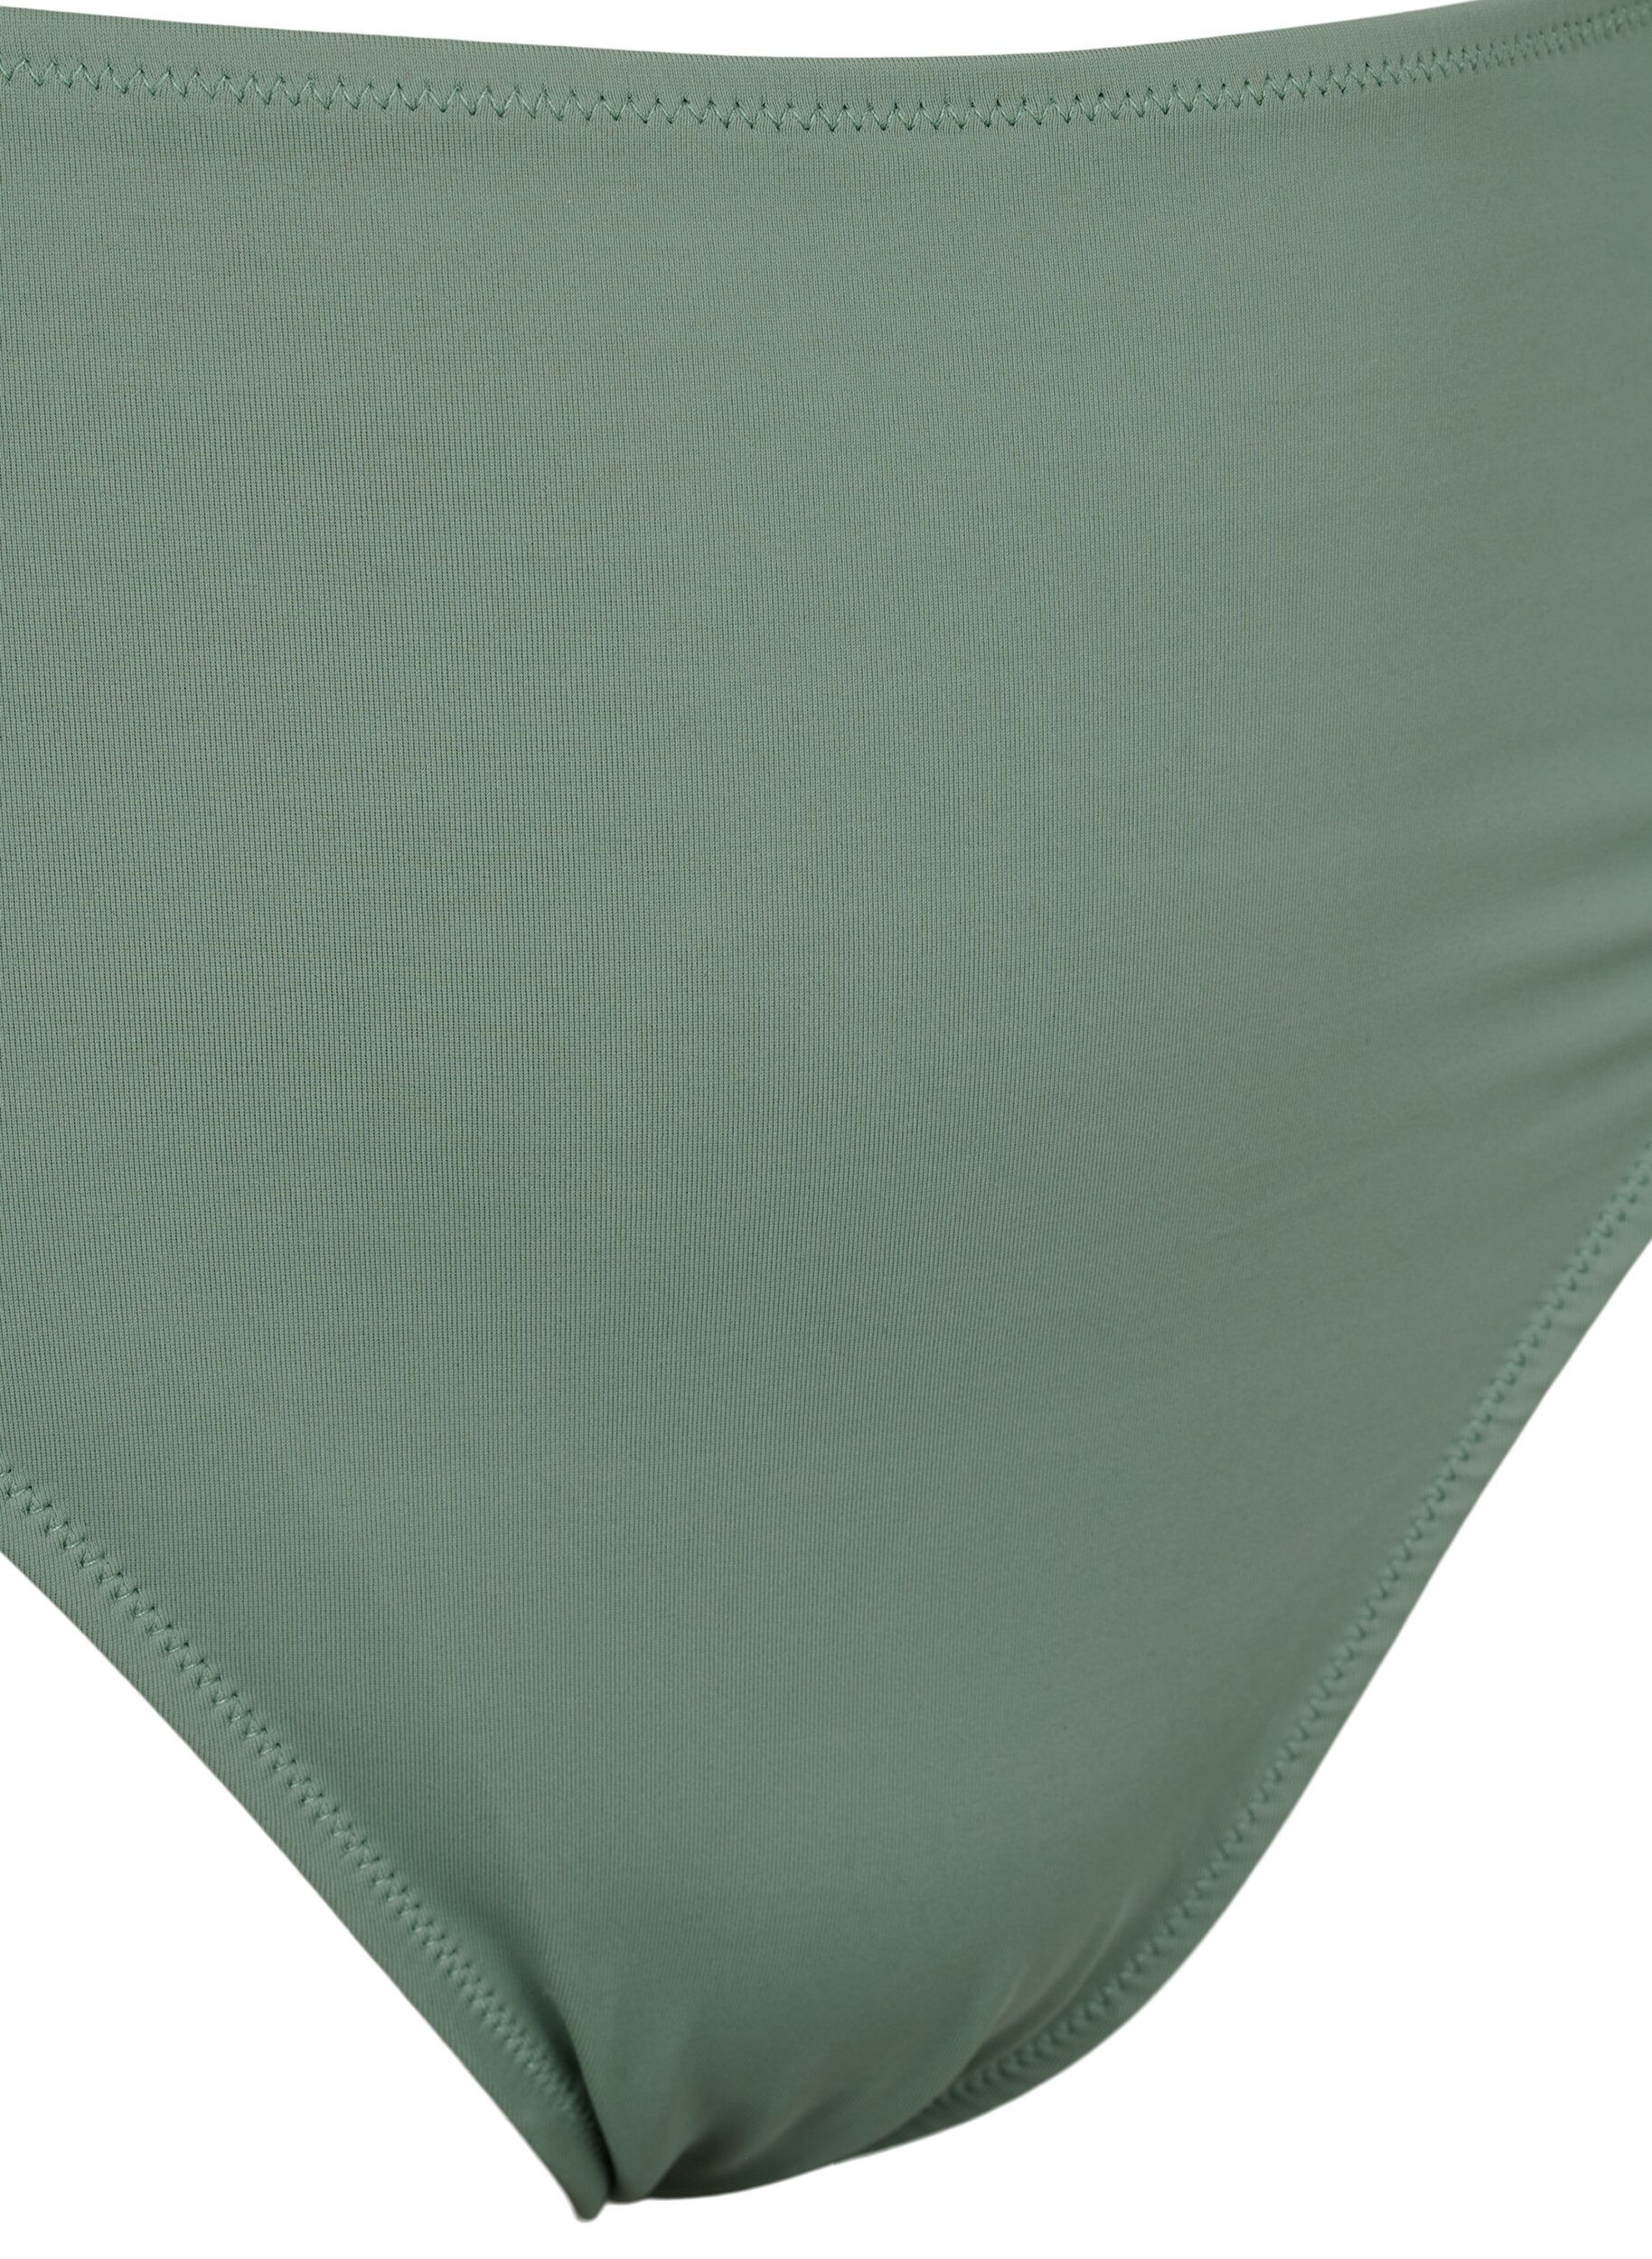 Tai bikini brief with regular waist - Green - Sz. 42-60 - Zizzifashion